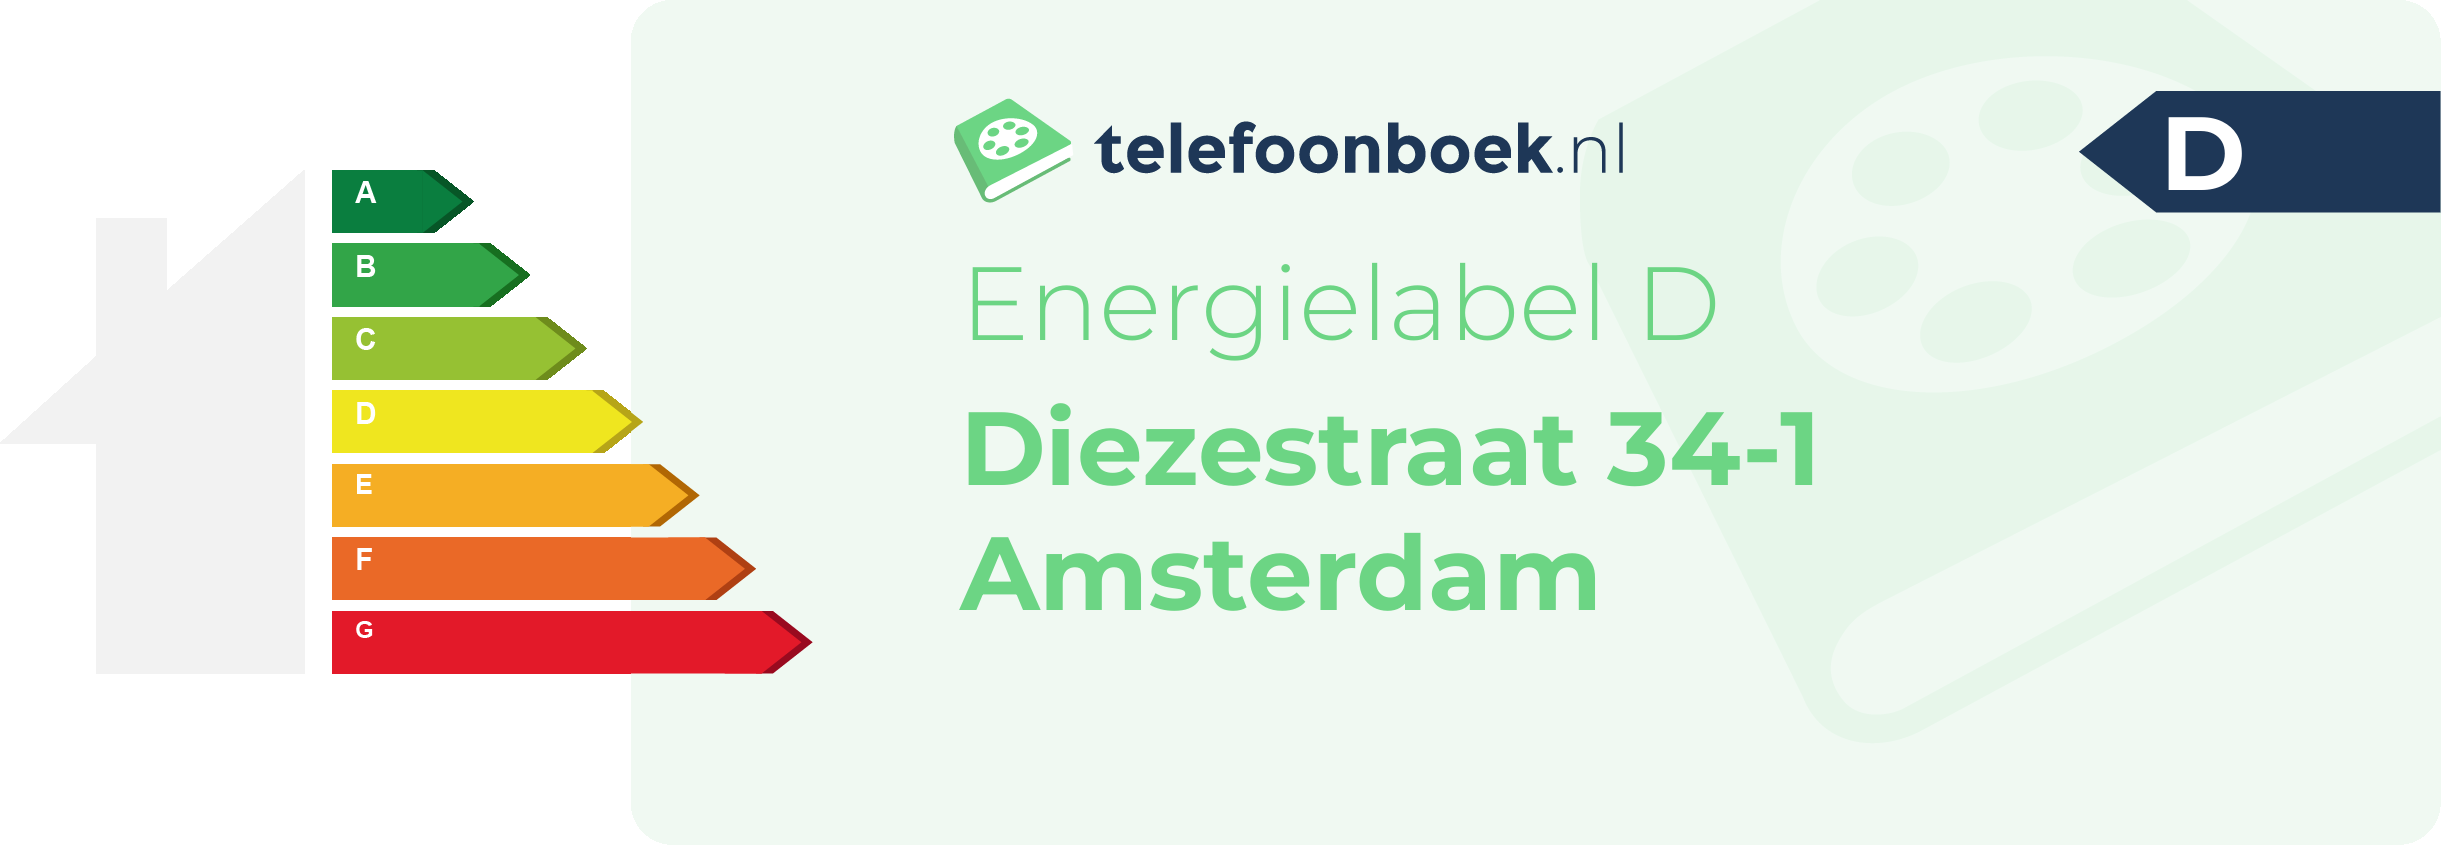 Energielabel Diezestraat 34-1 Amsterdam